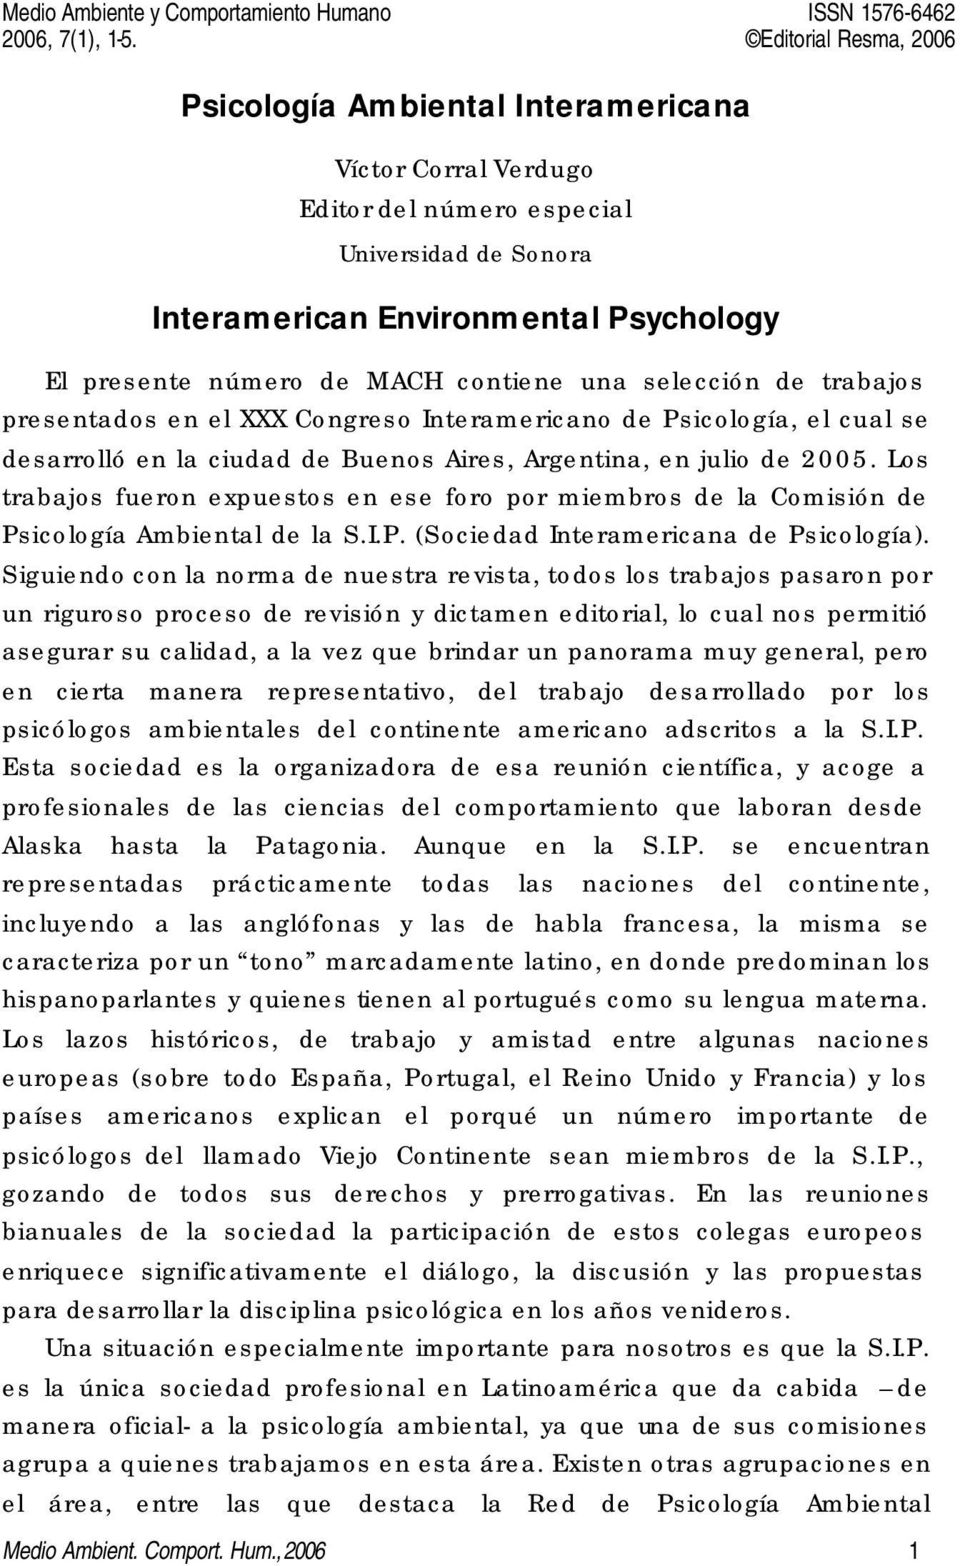 número de MACH contiene una selección de trabajos presentados en el XXX Congreso Interamericano de Psicología, el cual se desarrolló en la ciudad de Buenos Aires, Argentina, en julio de 2005.